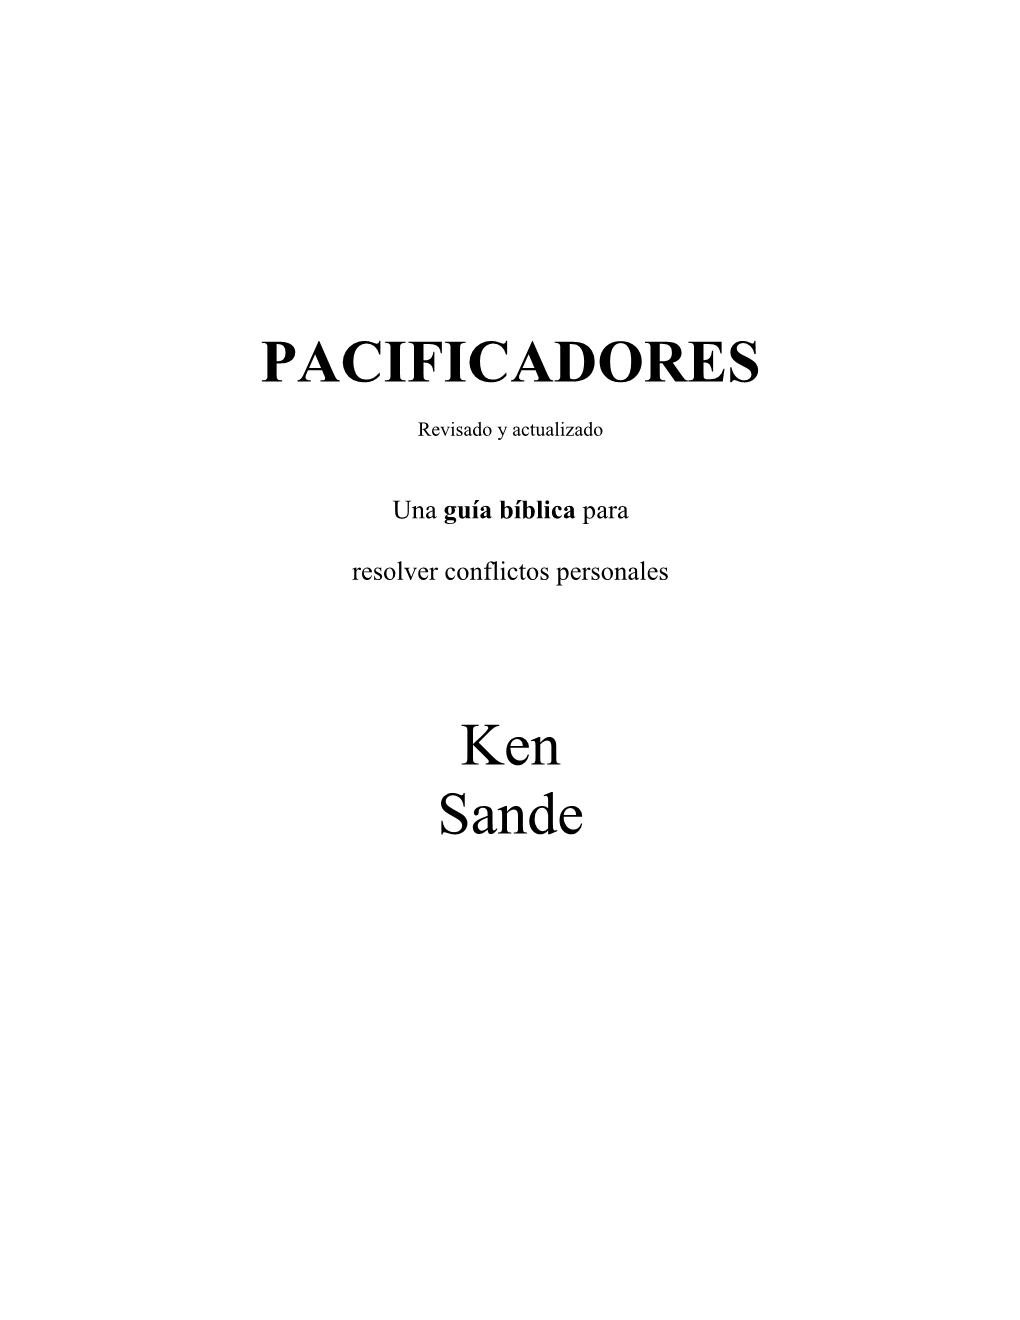 PACIFICADORES Ken Sande